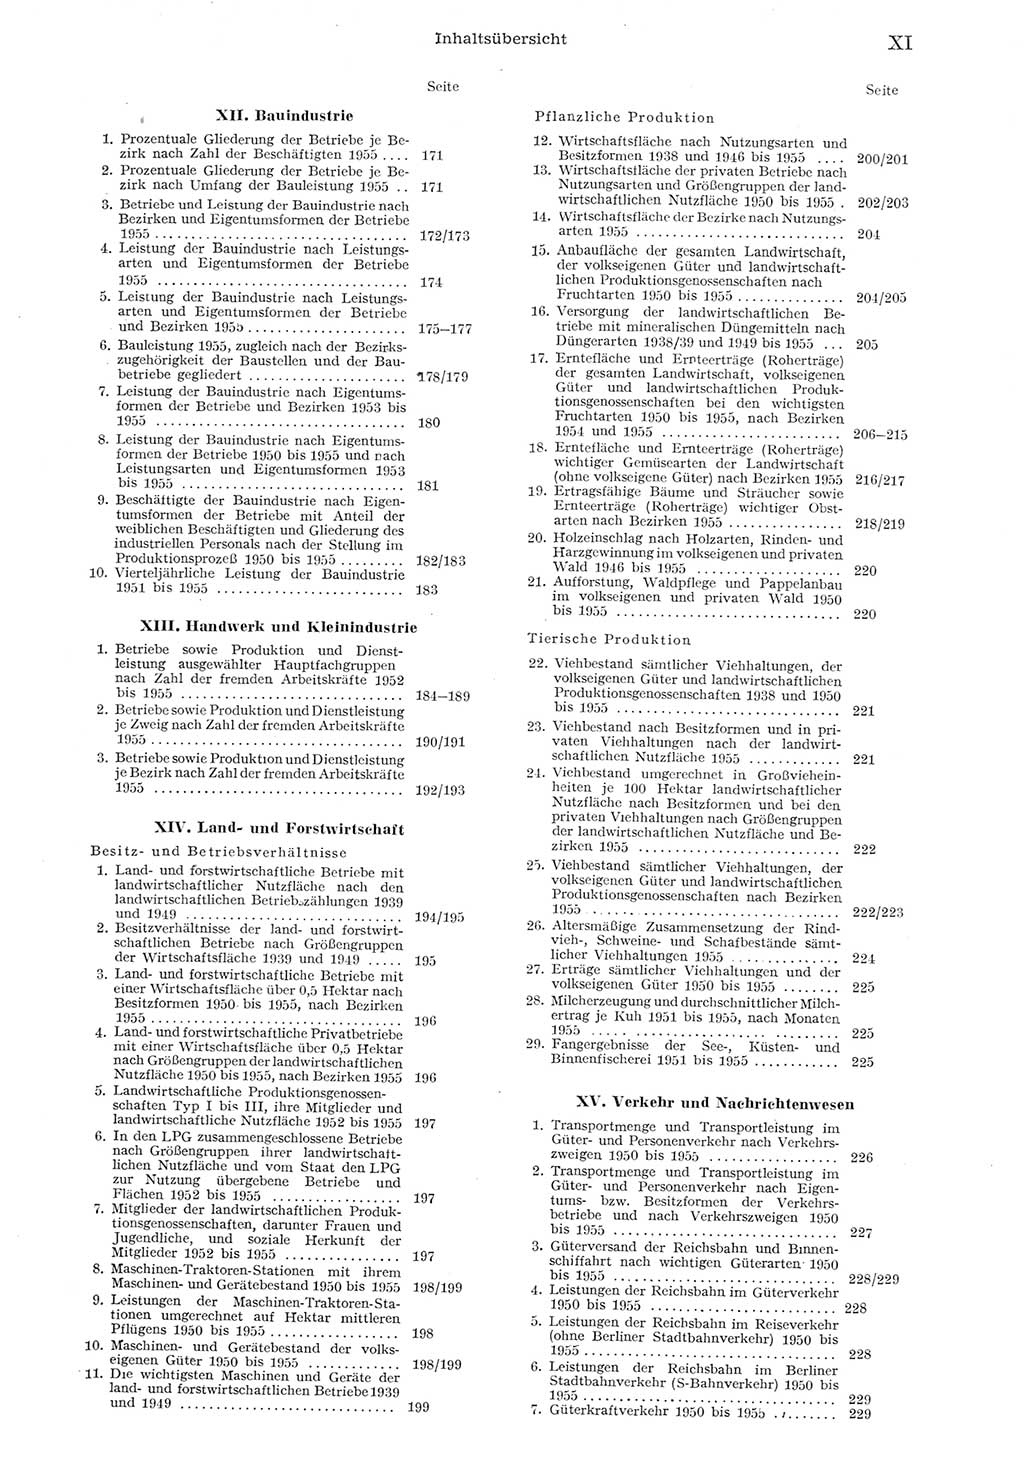 Statistisches Jahrbuch der Deutschen Demokratischen Republik (DDR) 1955, Seite 11 (Stat. Jb. DDR 1955, S. 11)